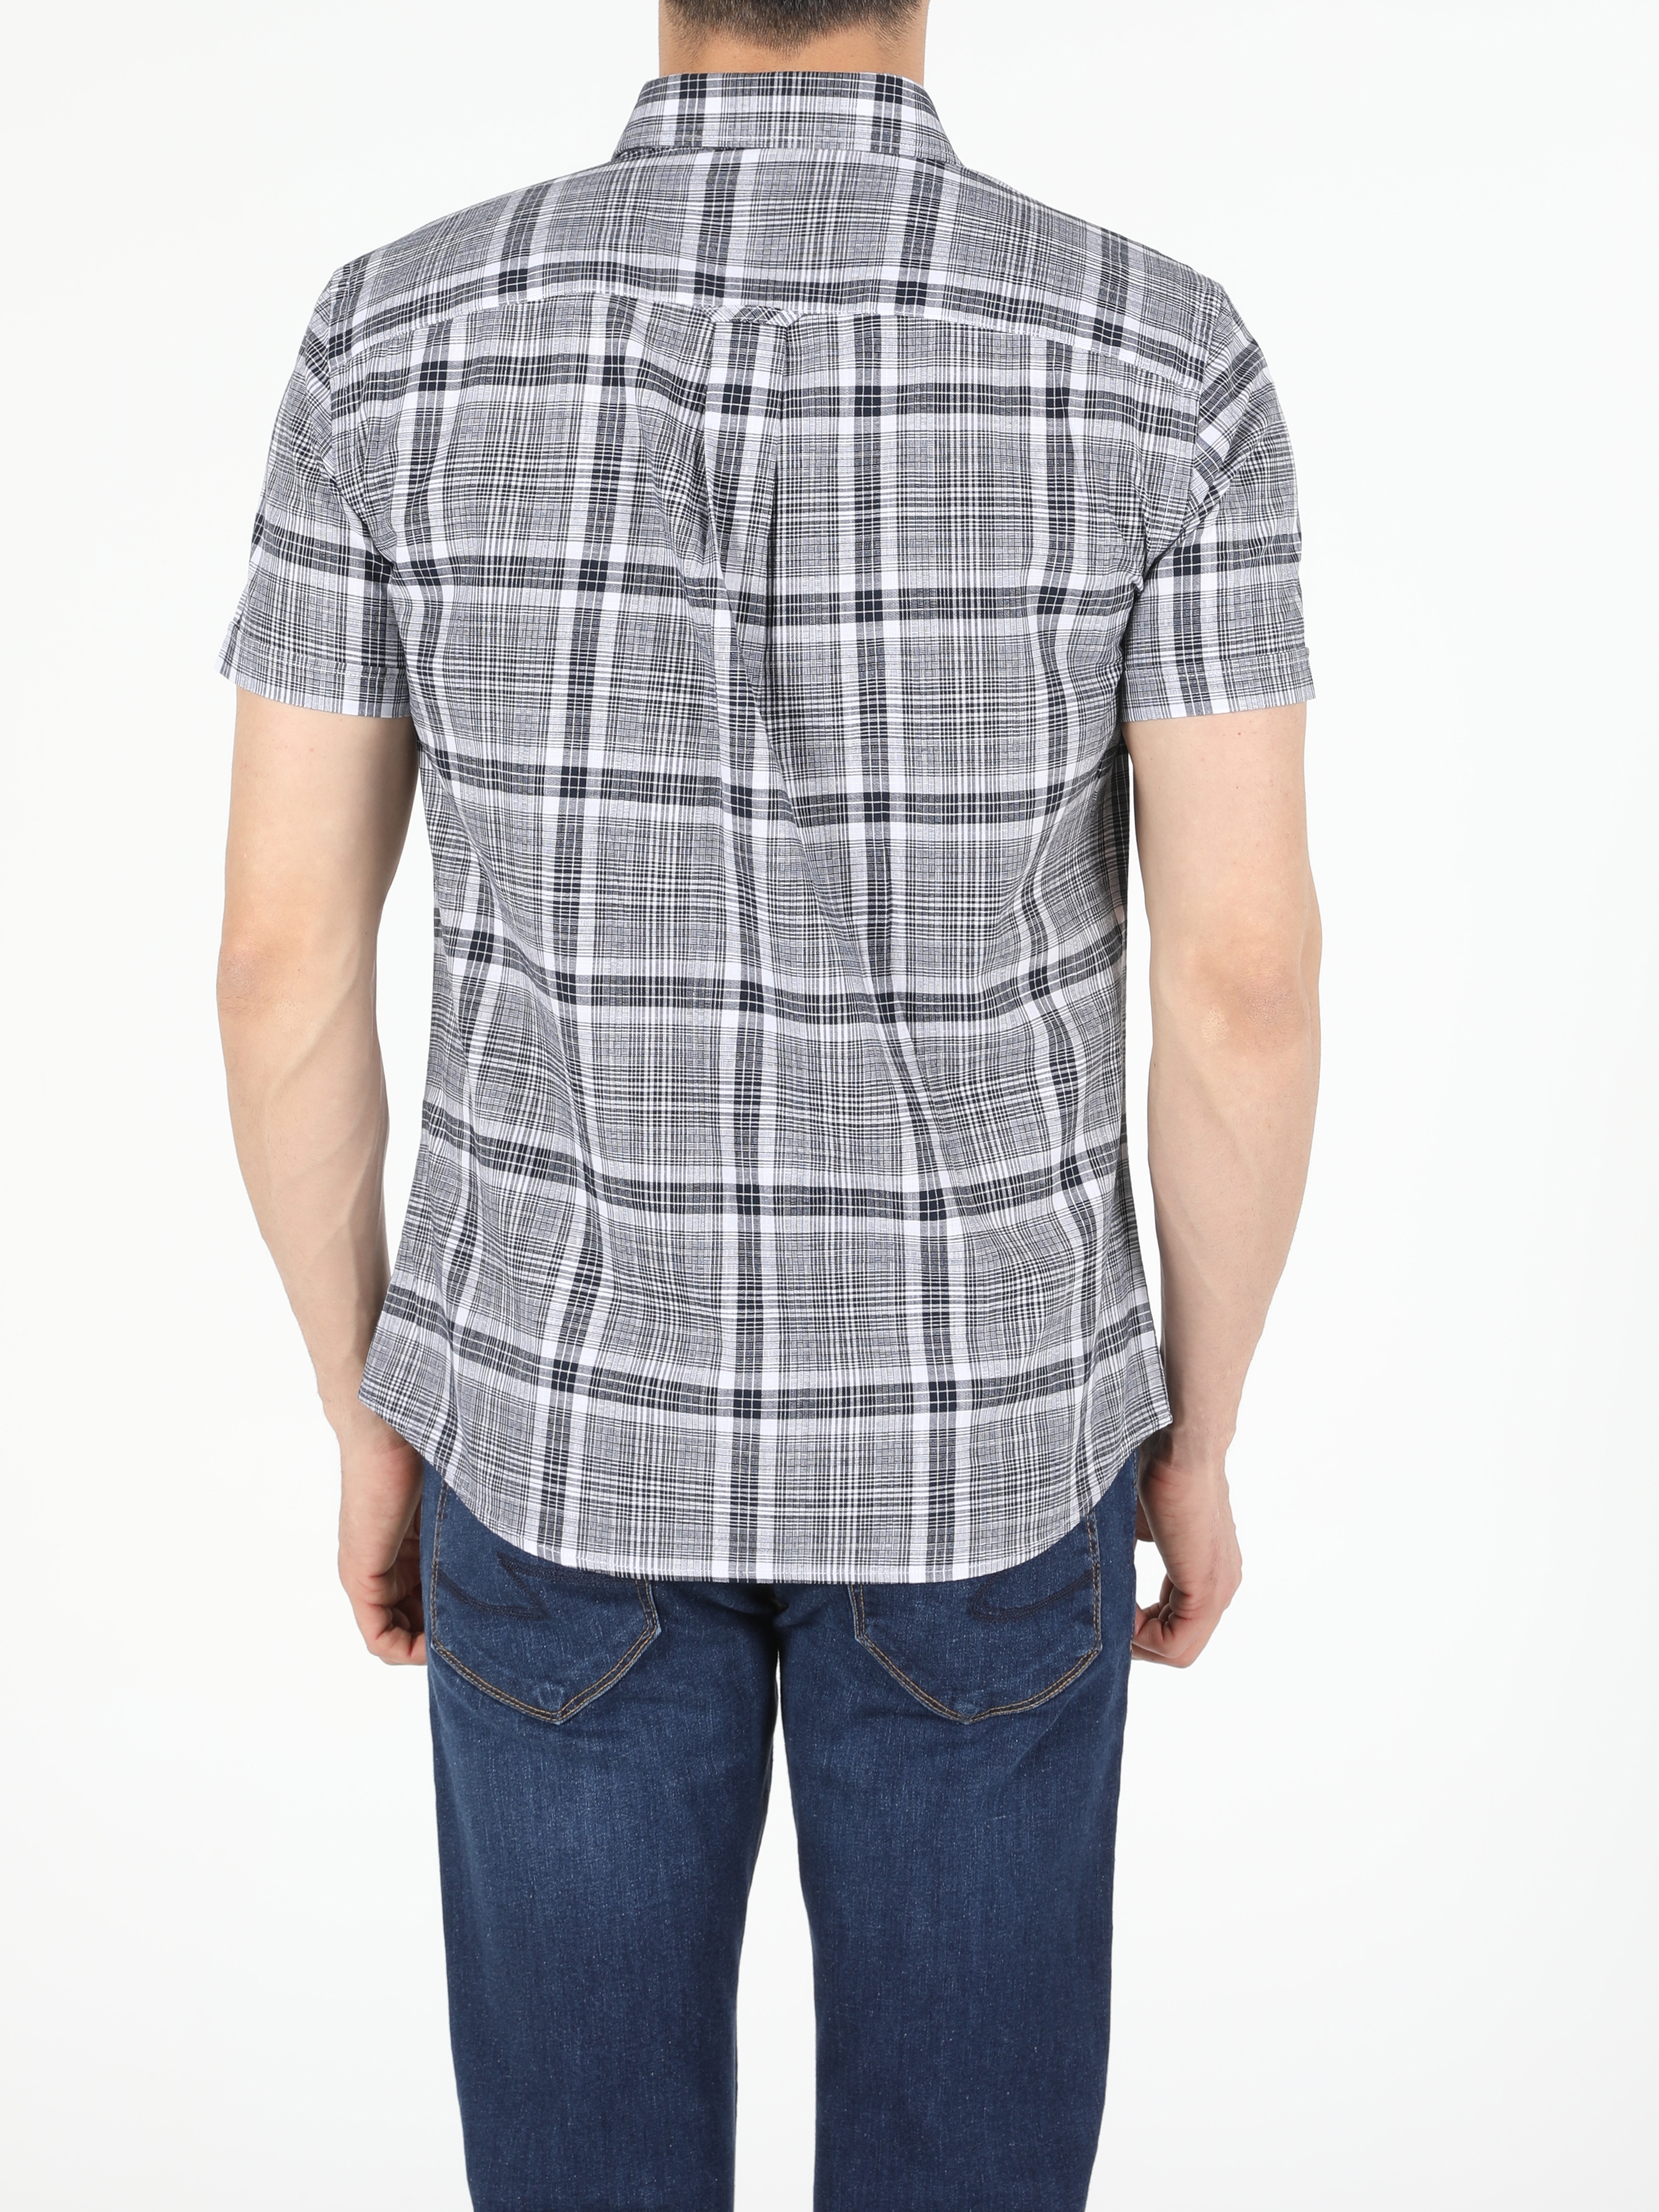 Colins Slim Fit Shirt Neck Erkek Kısa Kol Gömlek. 2